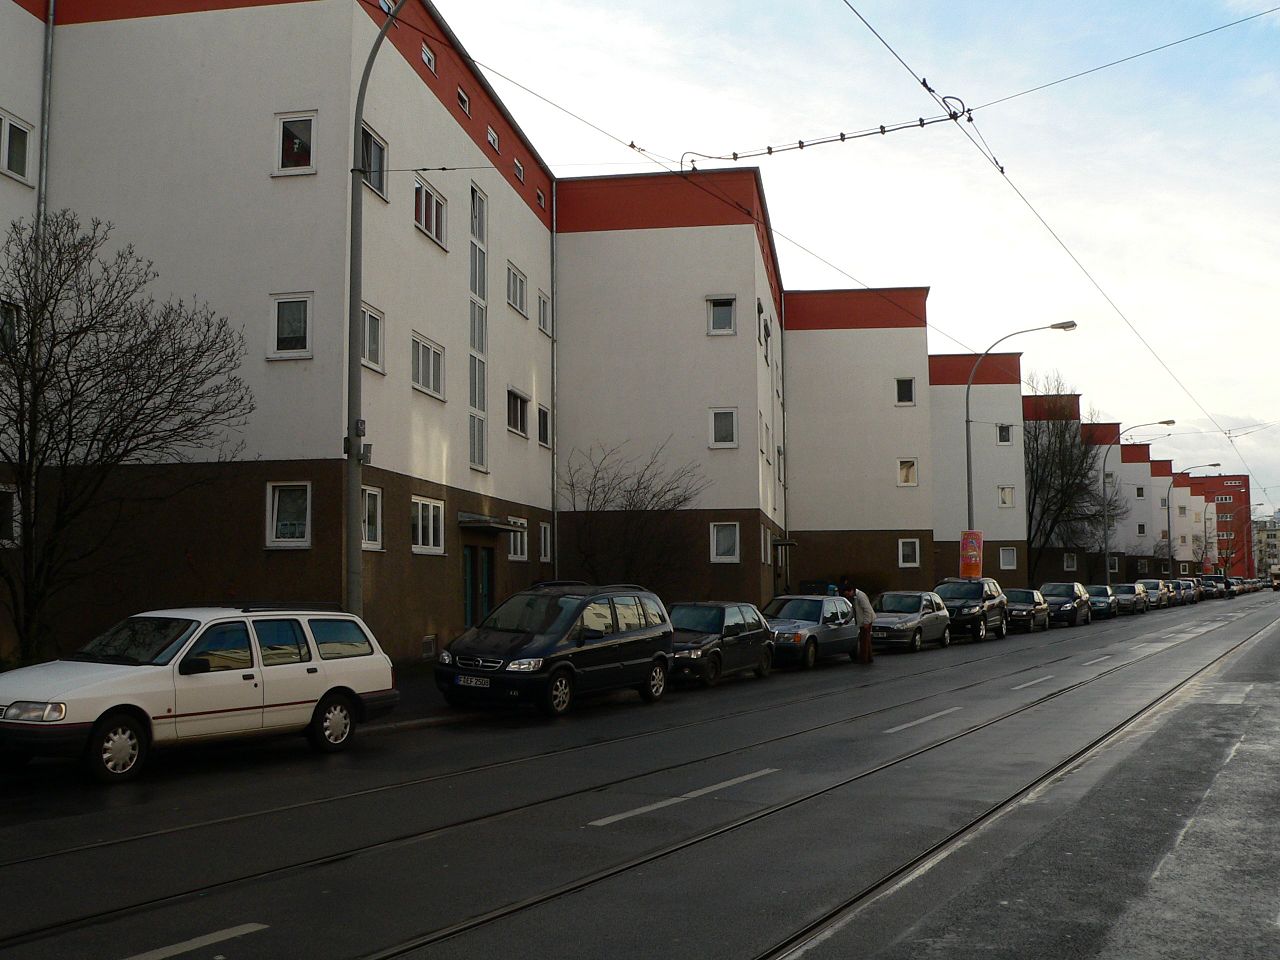 Bild Siedlung Bruchfeldstraße Frankfurt am Main